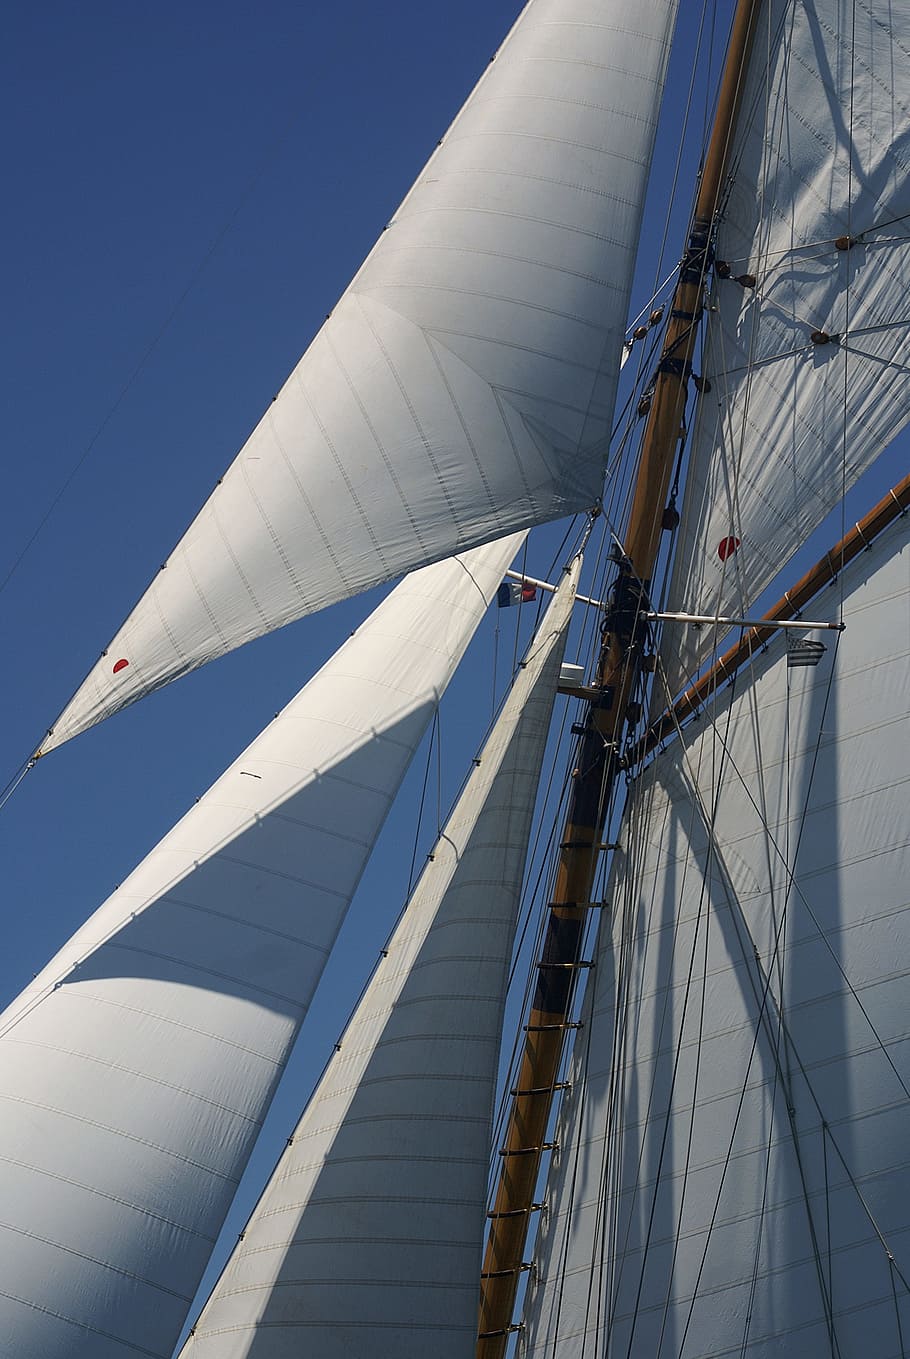 Sails, Sailboats, Boat, nautical vessel, sailboat, sailing ship, sailing, mast, rigging, transportation